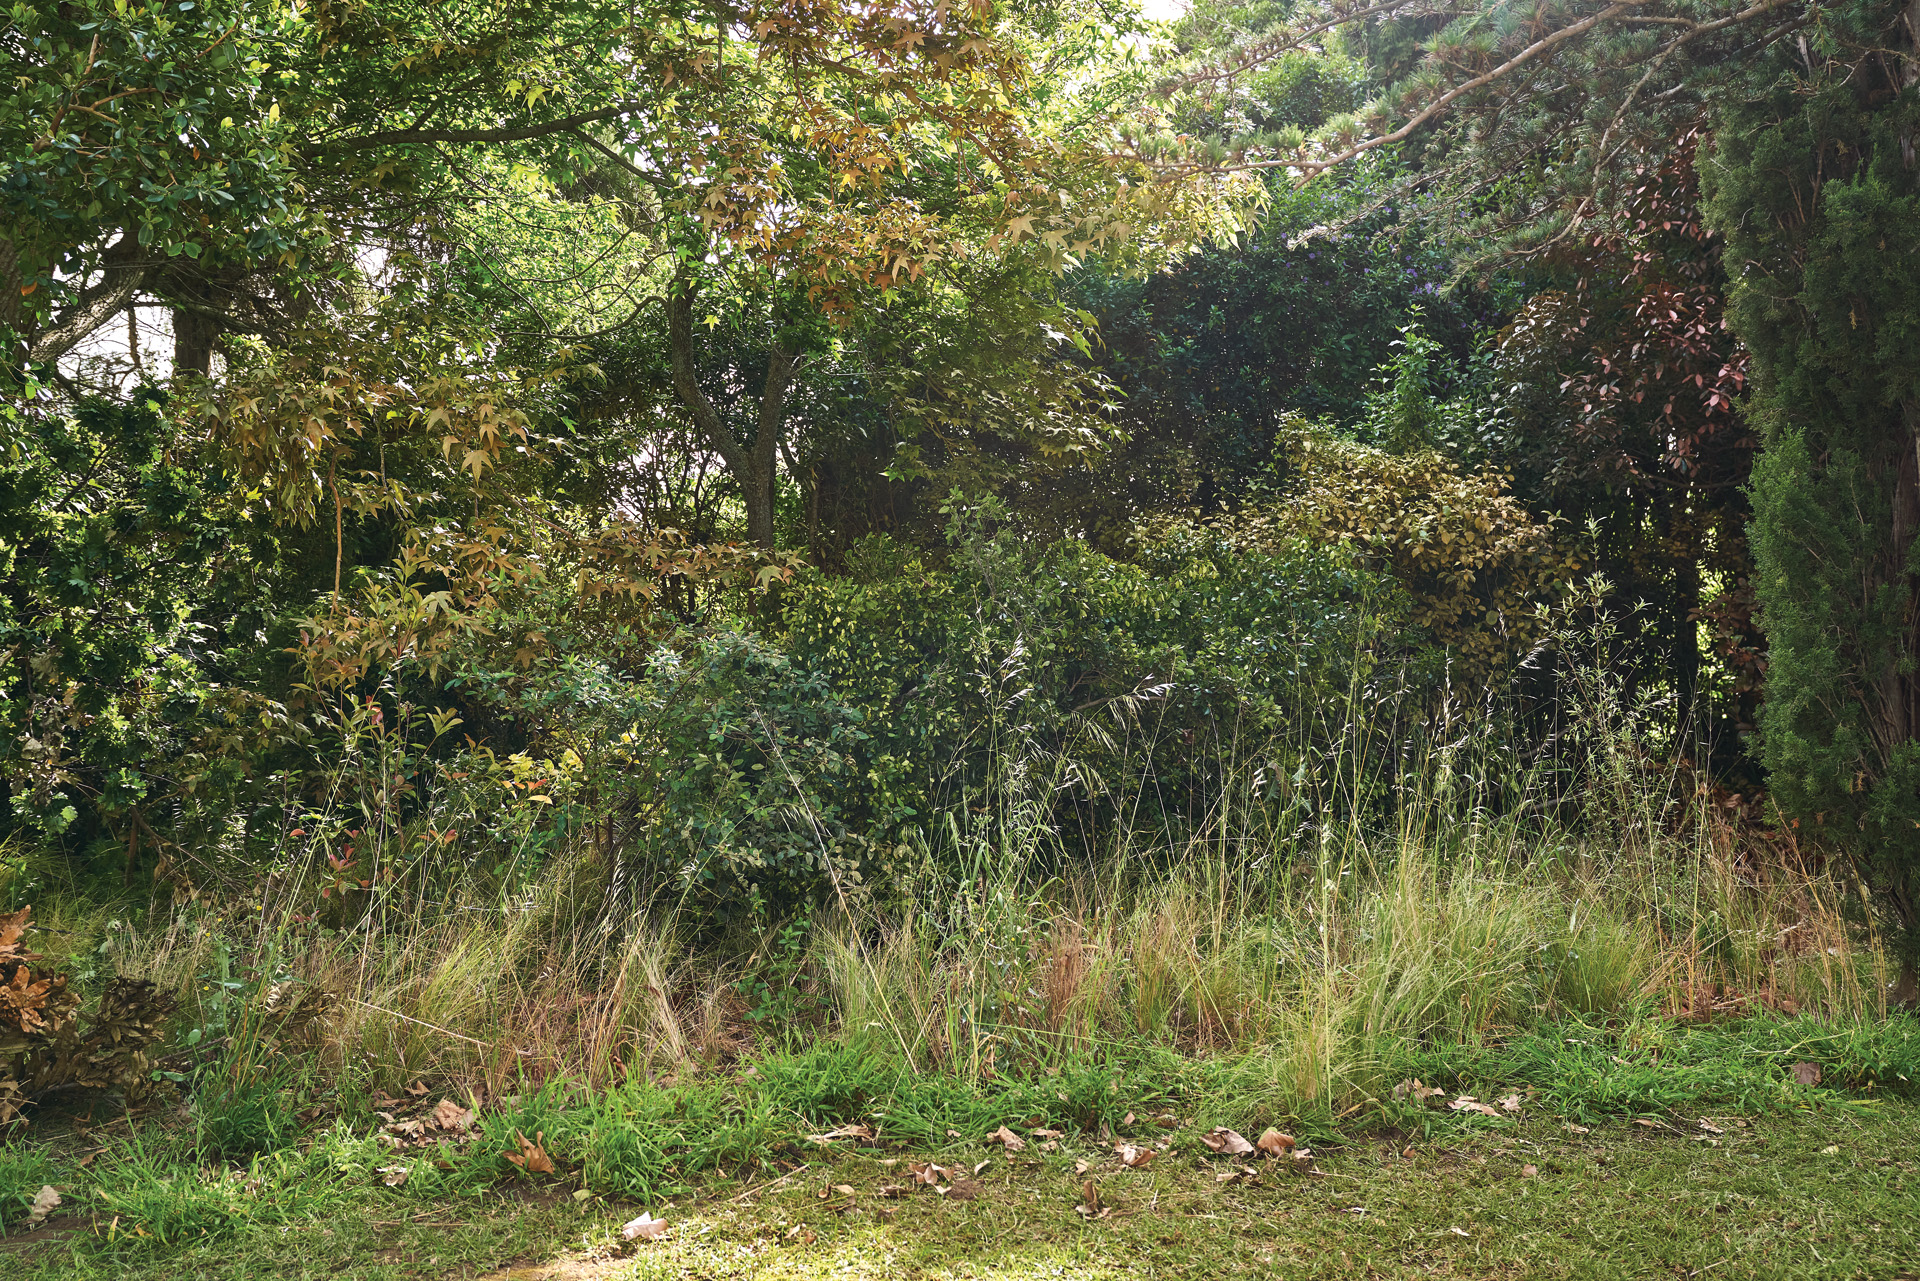 Jardin ombragé avec des hautes herbes, des feuilles mortes au sol et des arbustes et arbres denses